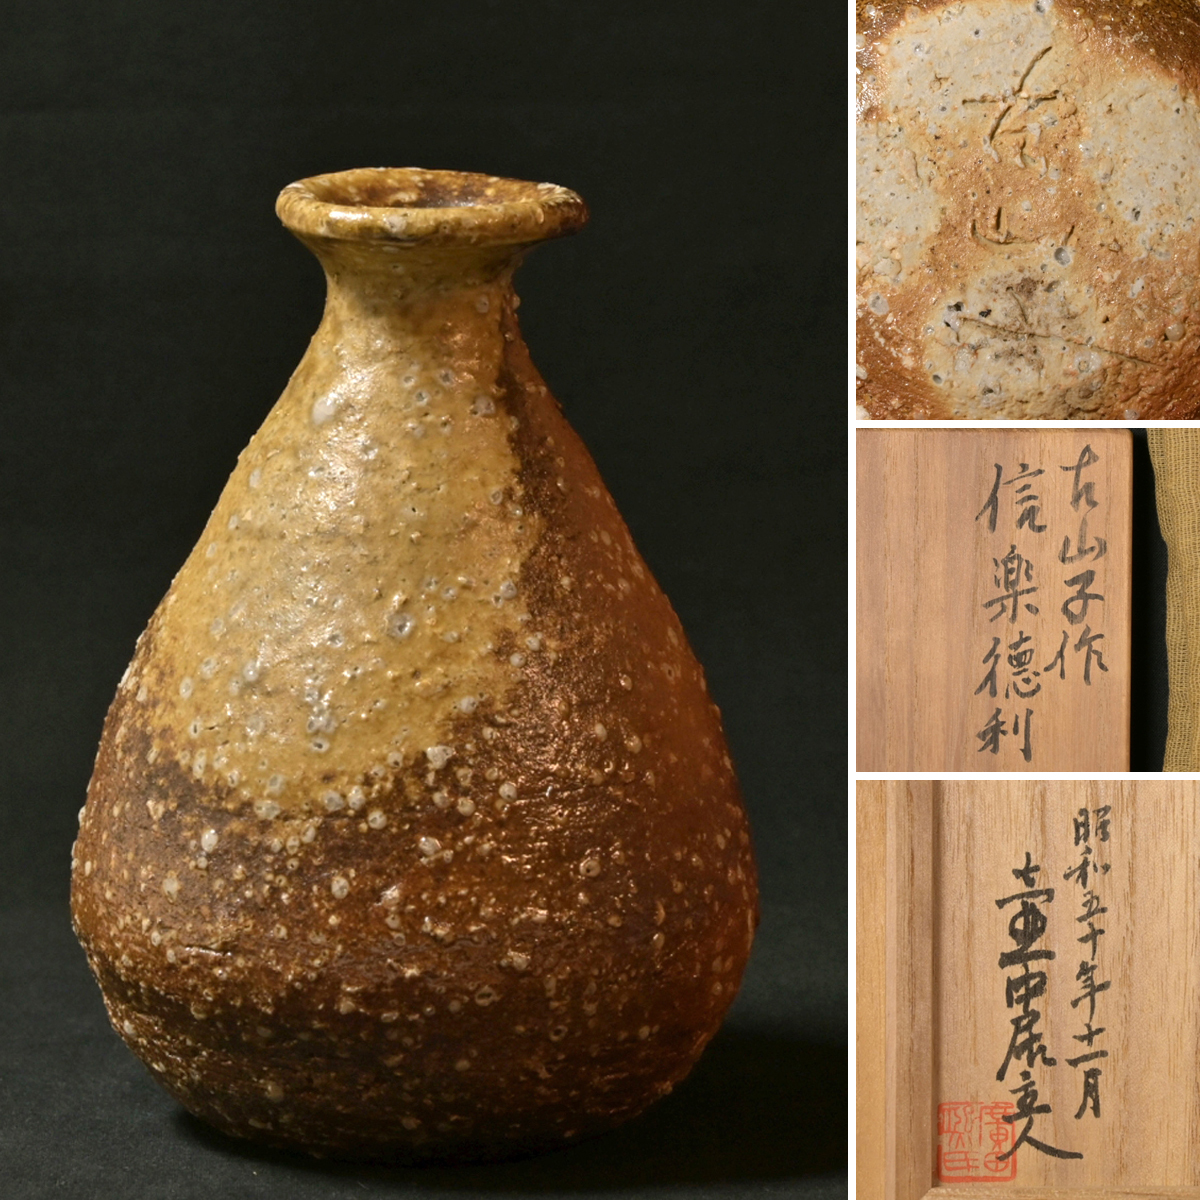 * не использовался похоже прекрасный товар * [ Majjore изобразительное искусство ] Ояма .. Хара Shigaraki бутылочка для сакэ . коробка (. средний .. человек ) подлинный товар гарантия [ осмотр ] Ояма Fuji Хара 